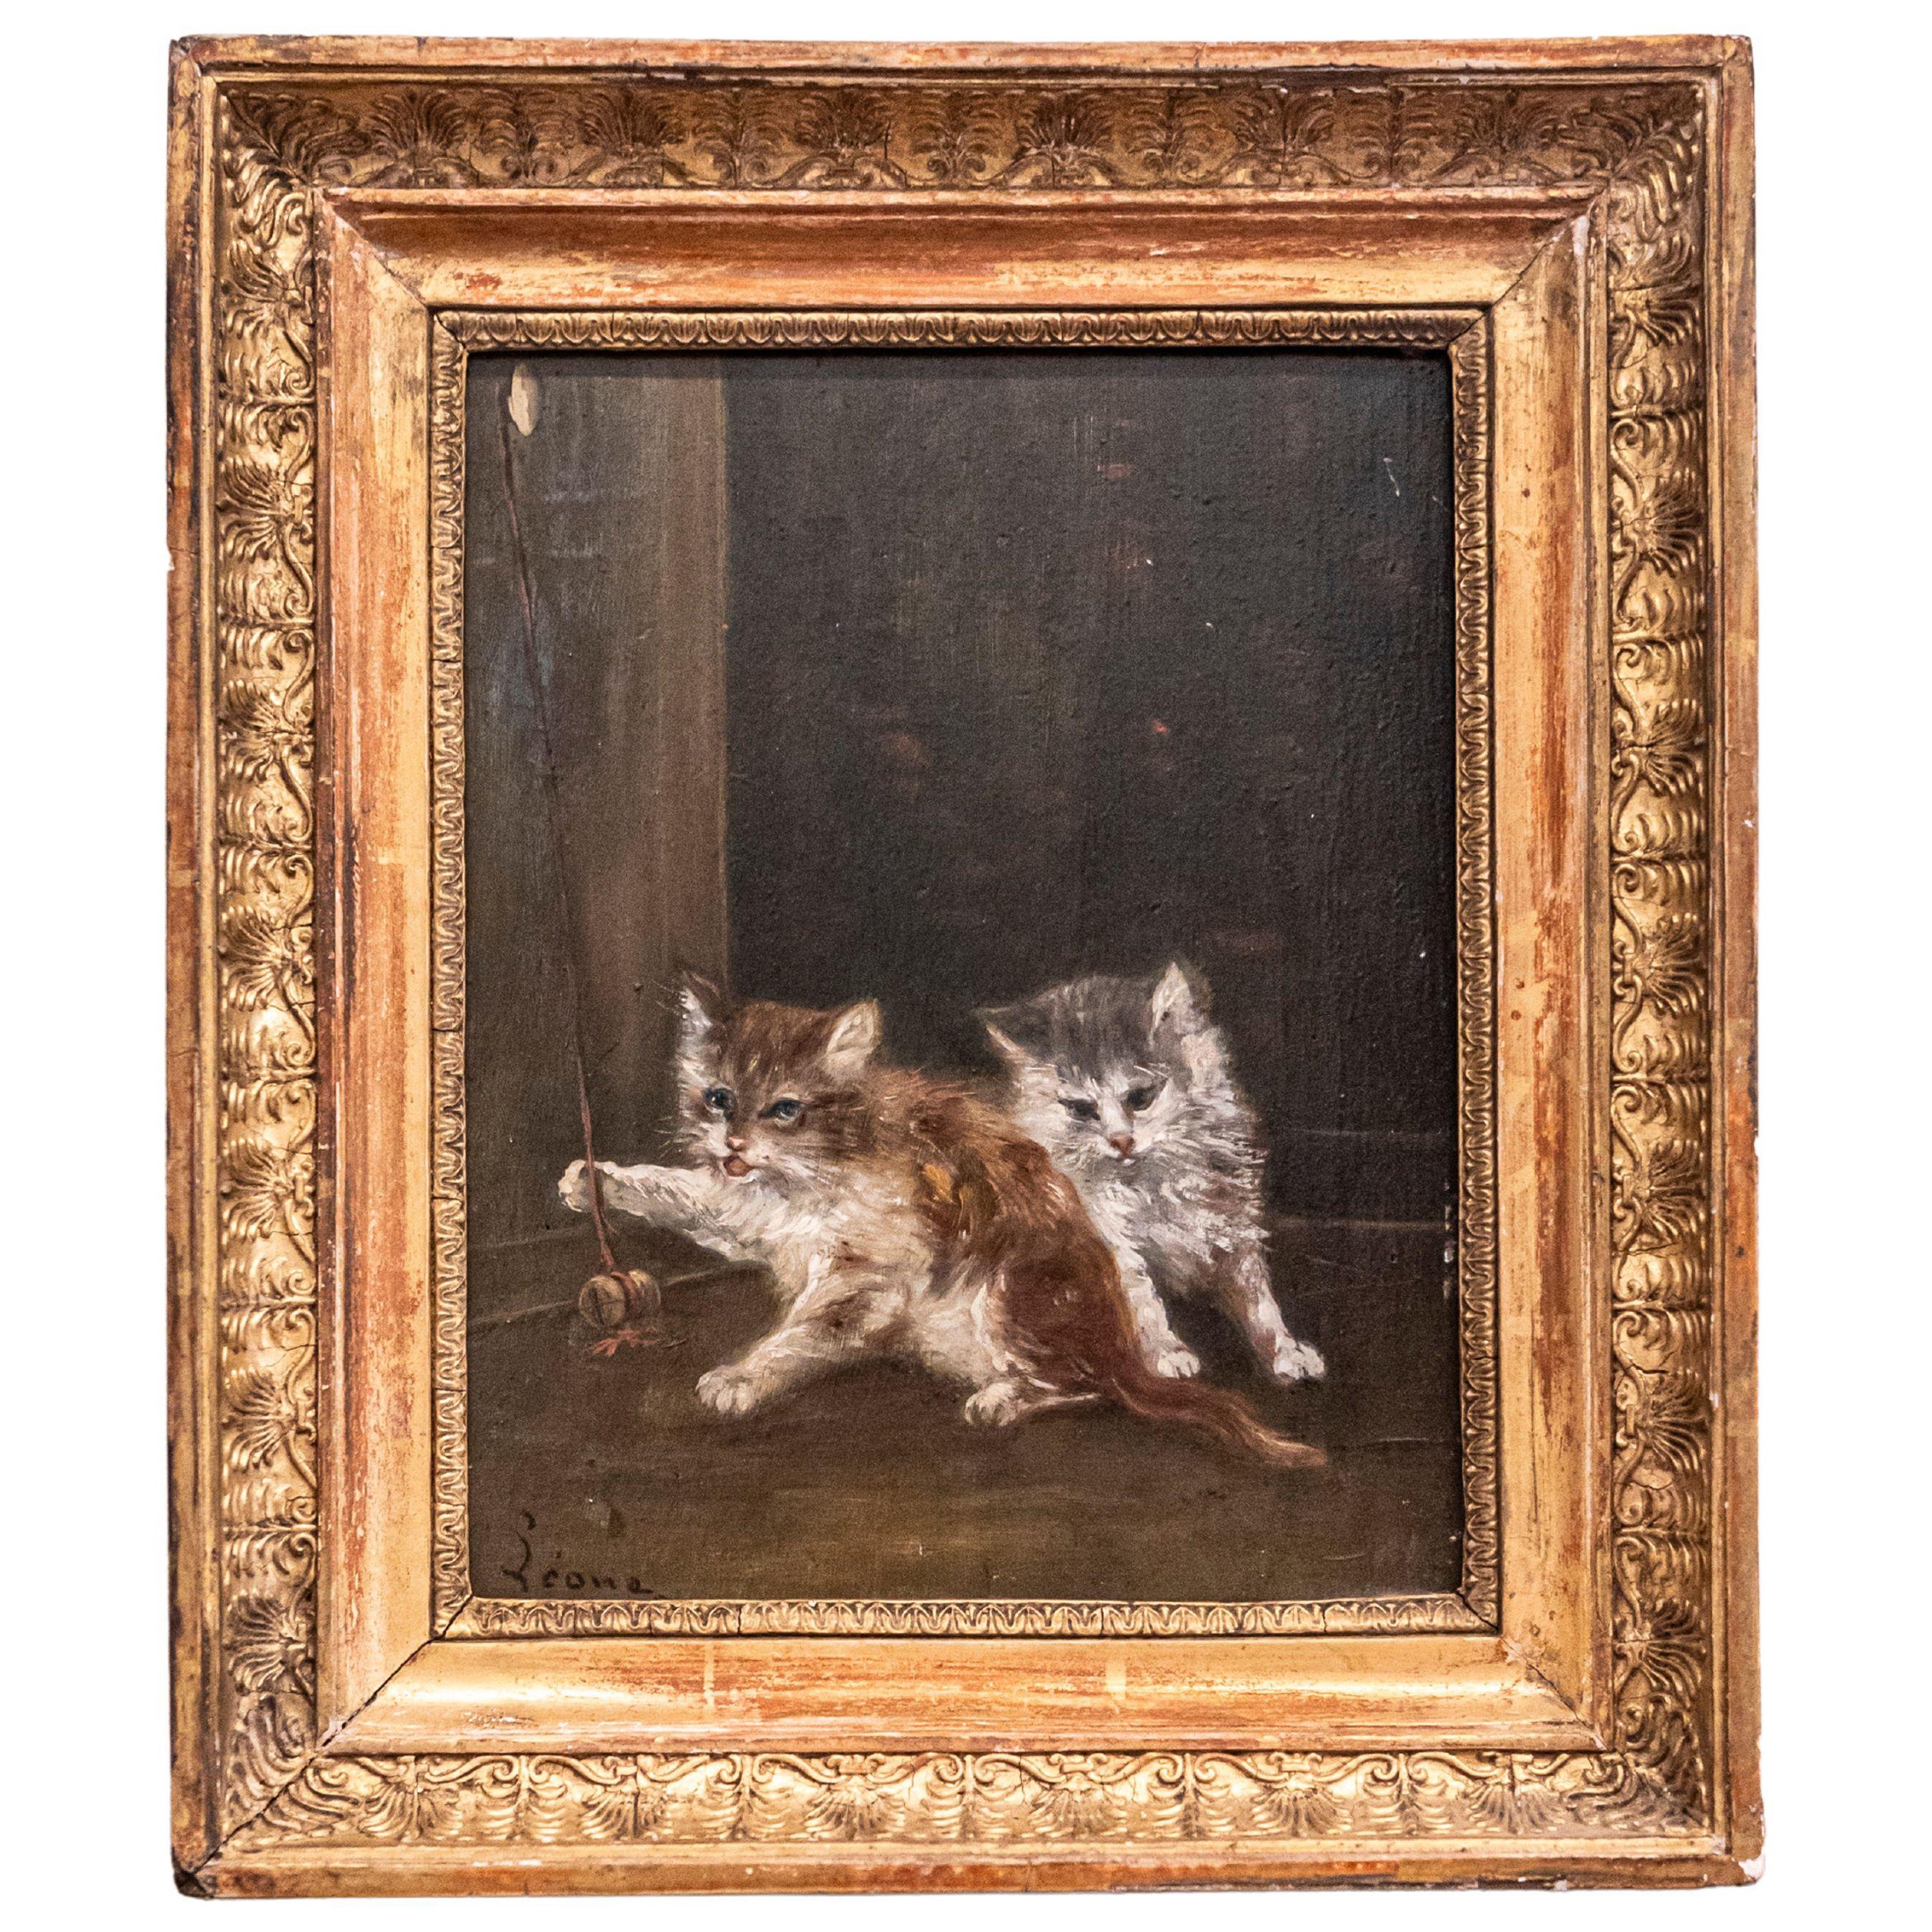 Peinture sur toile française des années 1890 représentant des chatons jouant dans un cadre en bois doré